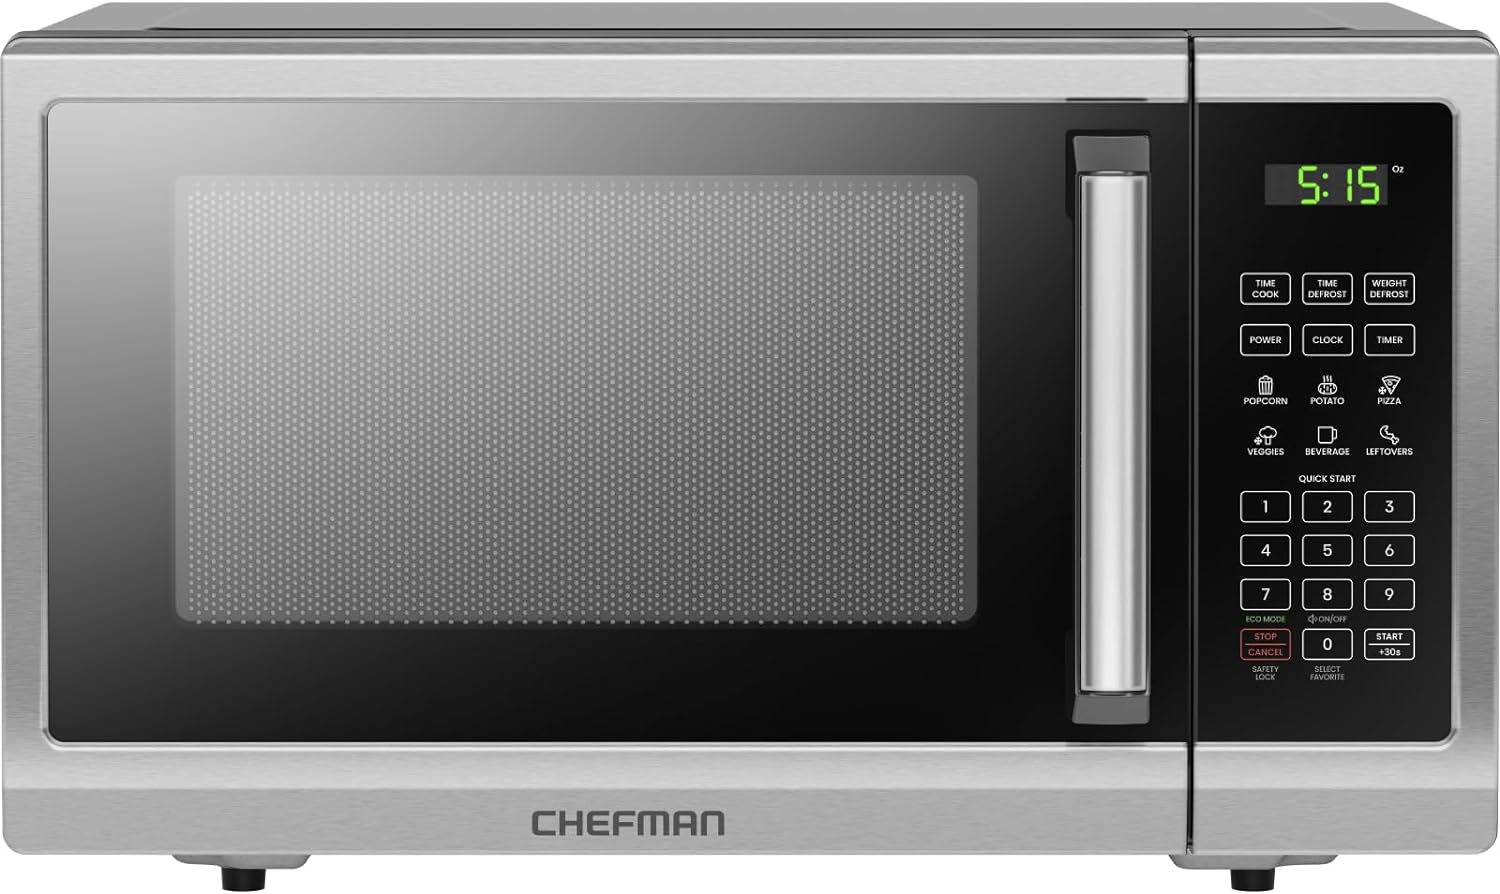 Chefman Countertop Microwave Oven 0.9 Cu. Ft.